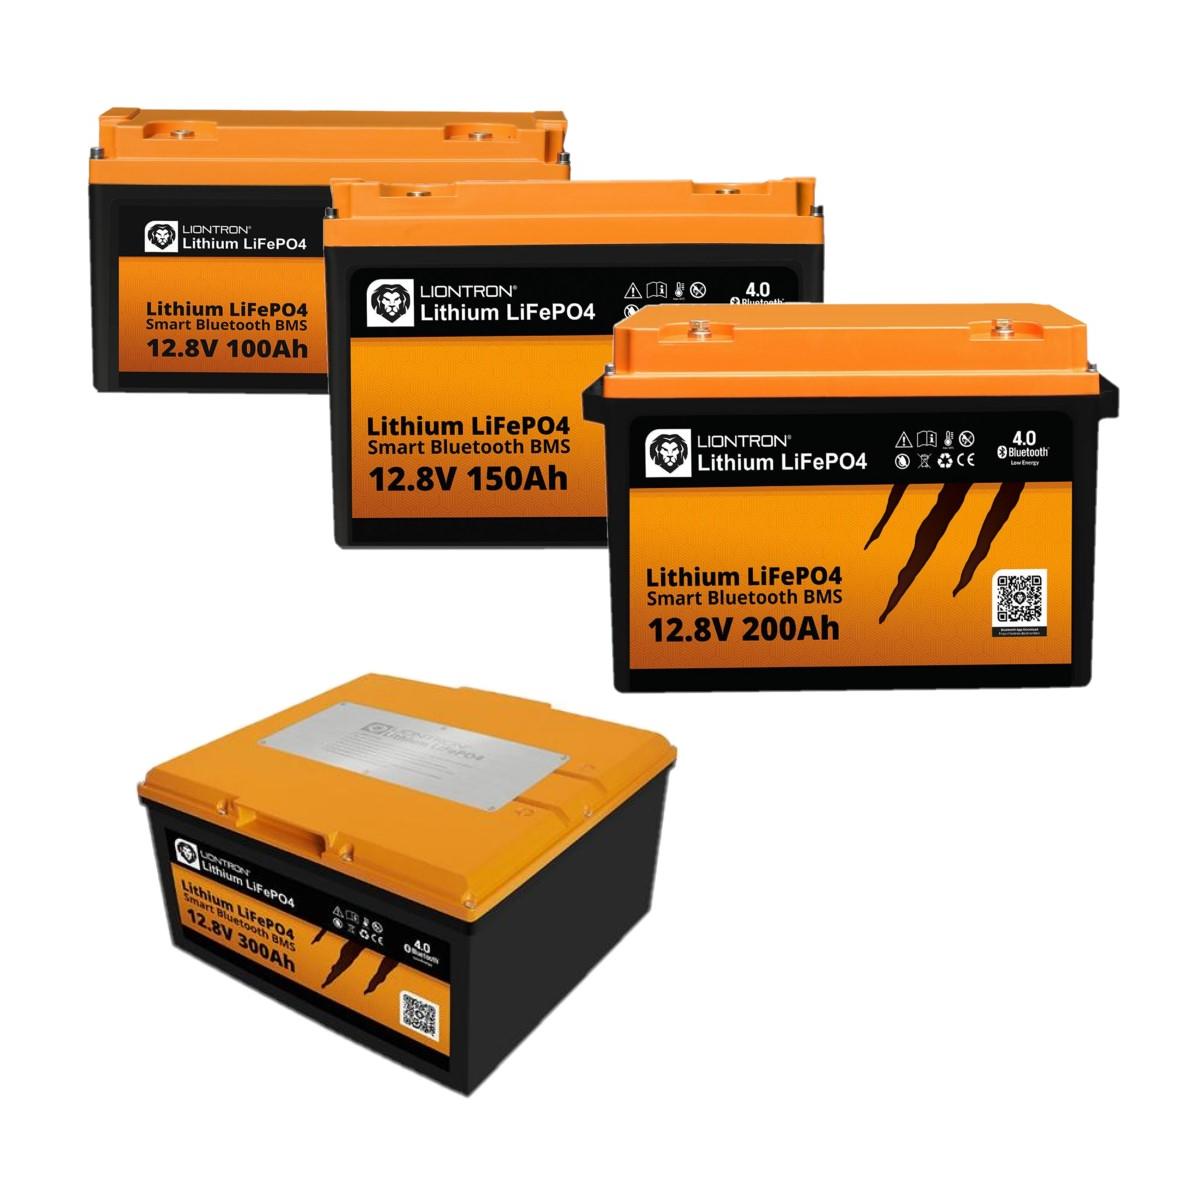 Liontron Arctic Lithium Batterie, 12,8V, mit BMS, BT 4.0 bei